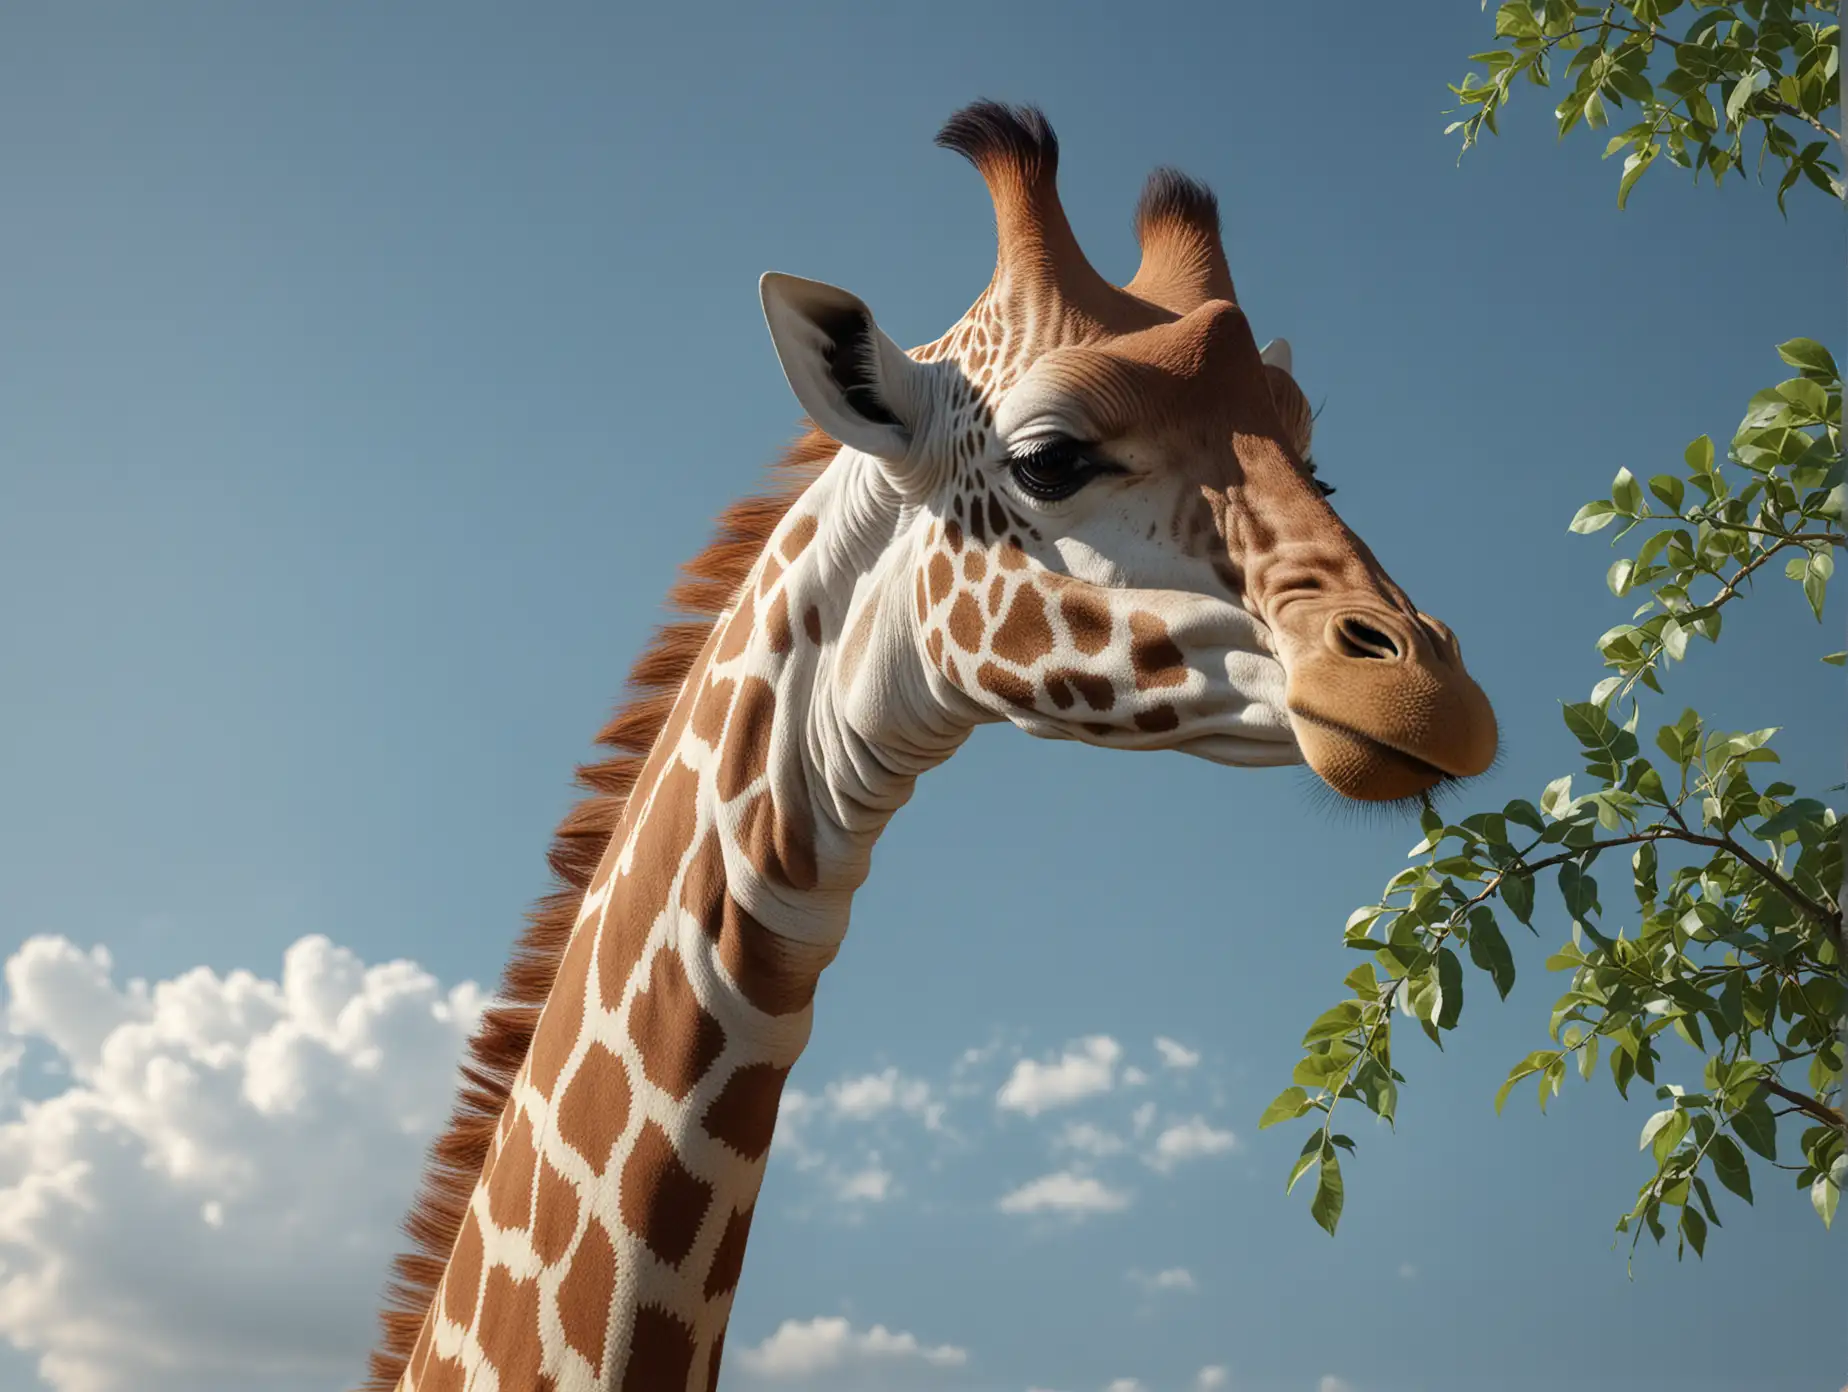 Crea un'immagine fotorealistica di una giraffa, ripresa da altezza uomo con un forte teleobiettivo, nell'inquadratura sola la testa e i primi 50 cm di collo, la giraffa sta mangiando un rametto con delle foglie, il cielo sullo sfondo è azzurro, qualità 8k, Alta risoluzione,  fotorealistico, realistico